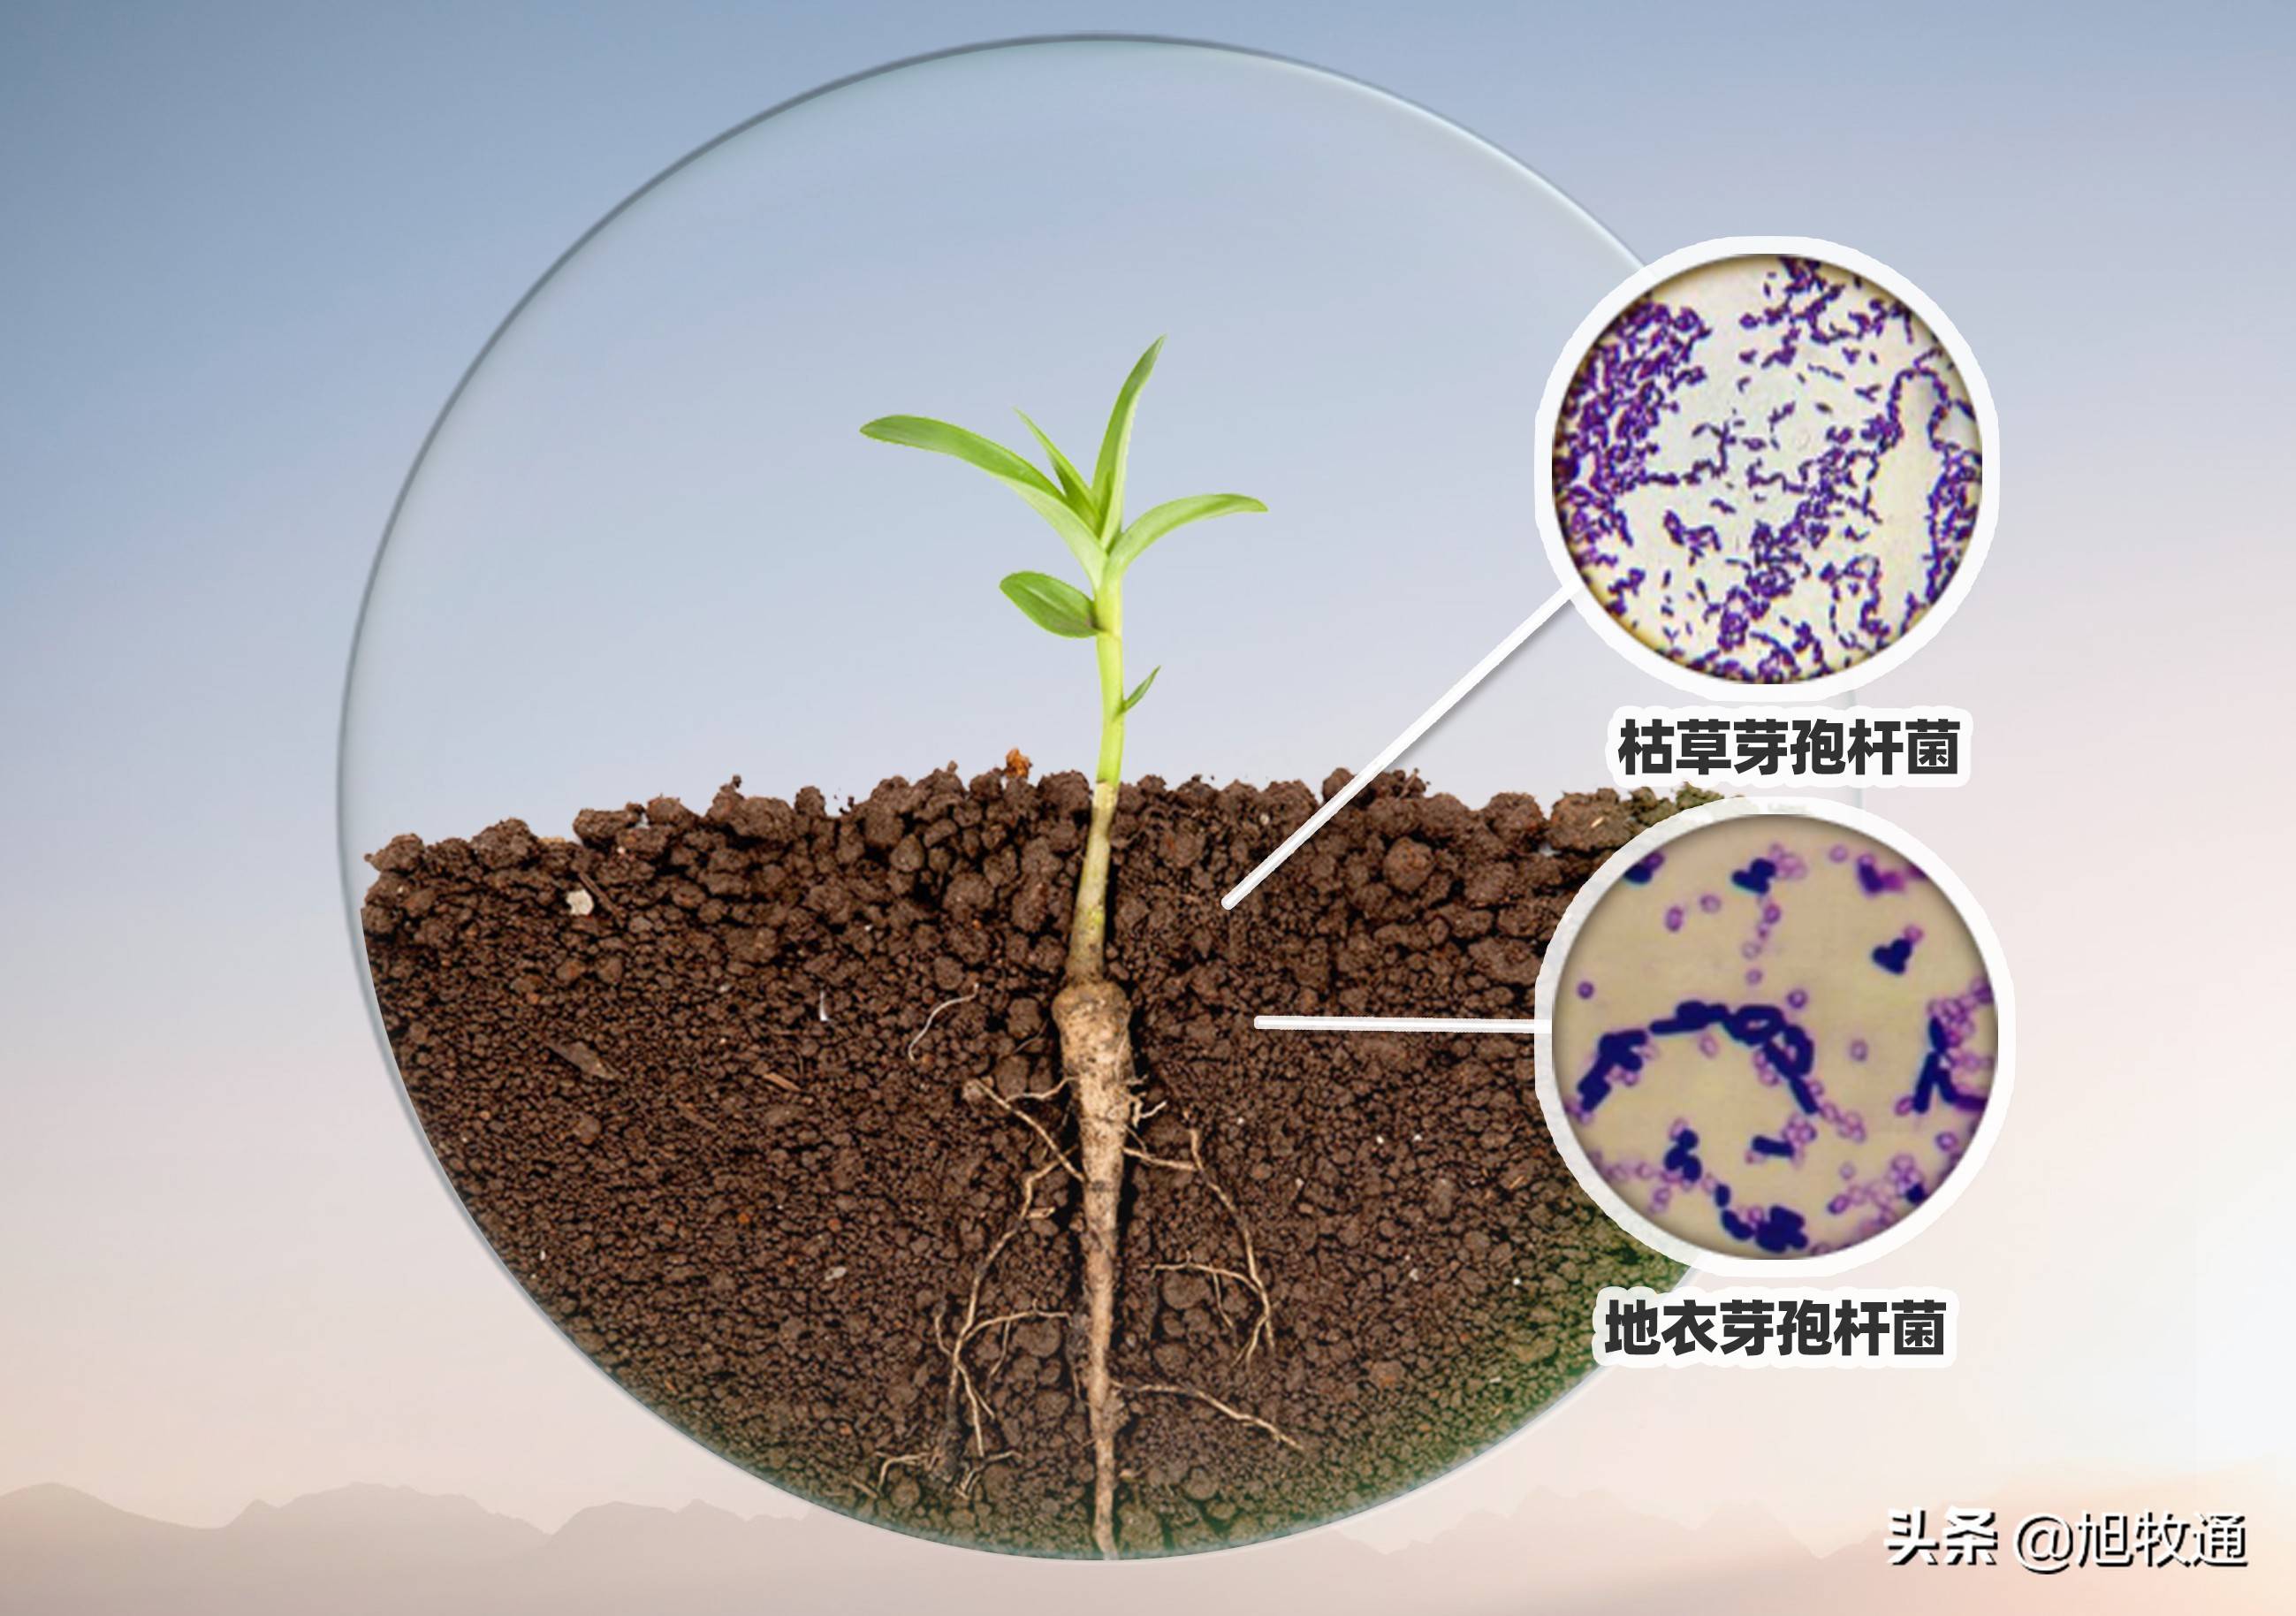 微生物菌和矿源黄腐酸钾的完美相遇 重茬 连作障碍统统搞定 土壤